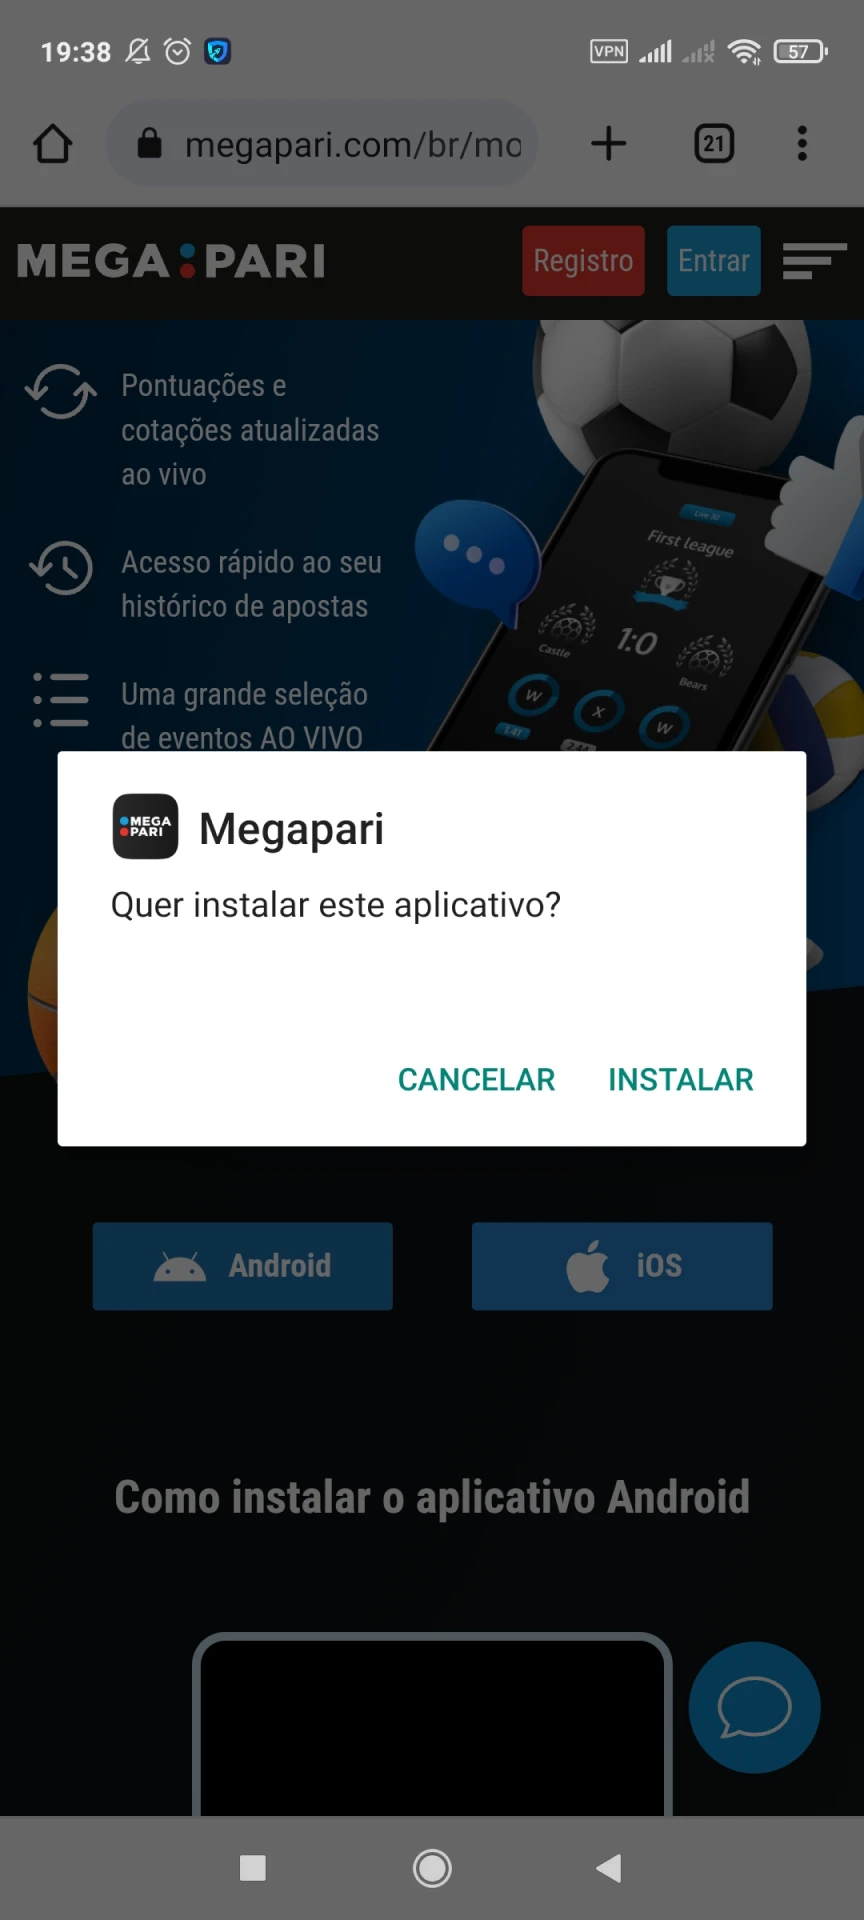 Prossiga com a instalação do aplicativo Megapari para Android.